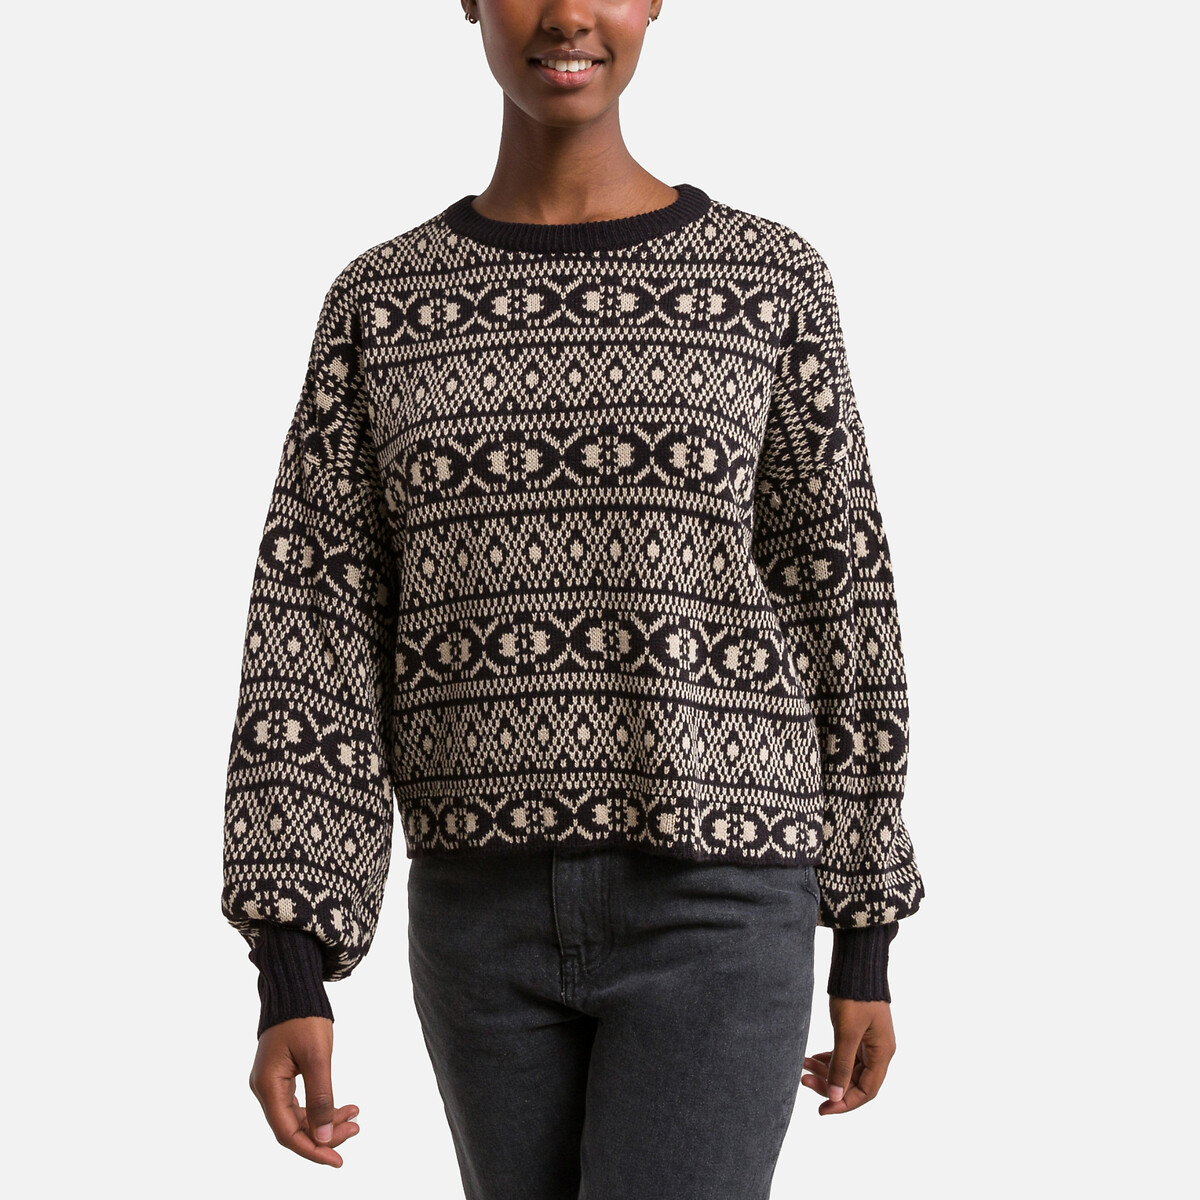 Пуловер Укороченный с жаккардовым узором M черный LaRedoute, размер M - фото 5